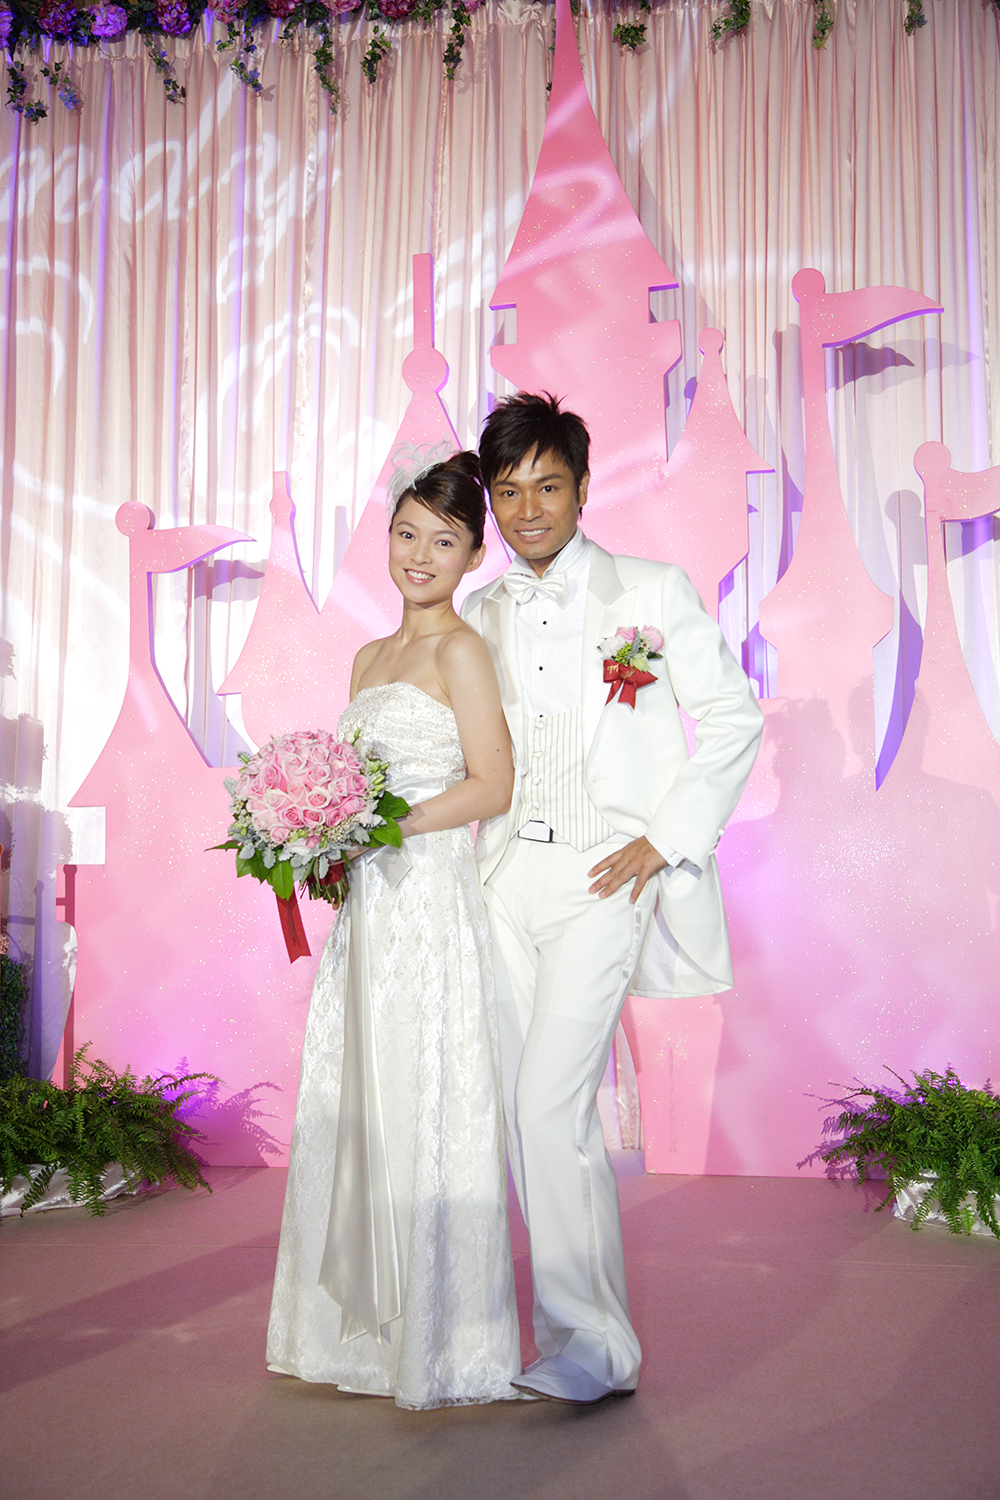 郭晋安与欧倩怡2006年在主题乐园举行童话式婚礼。